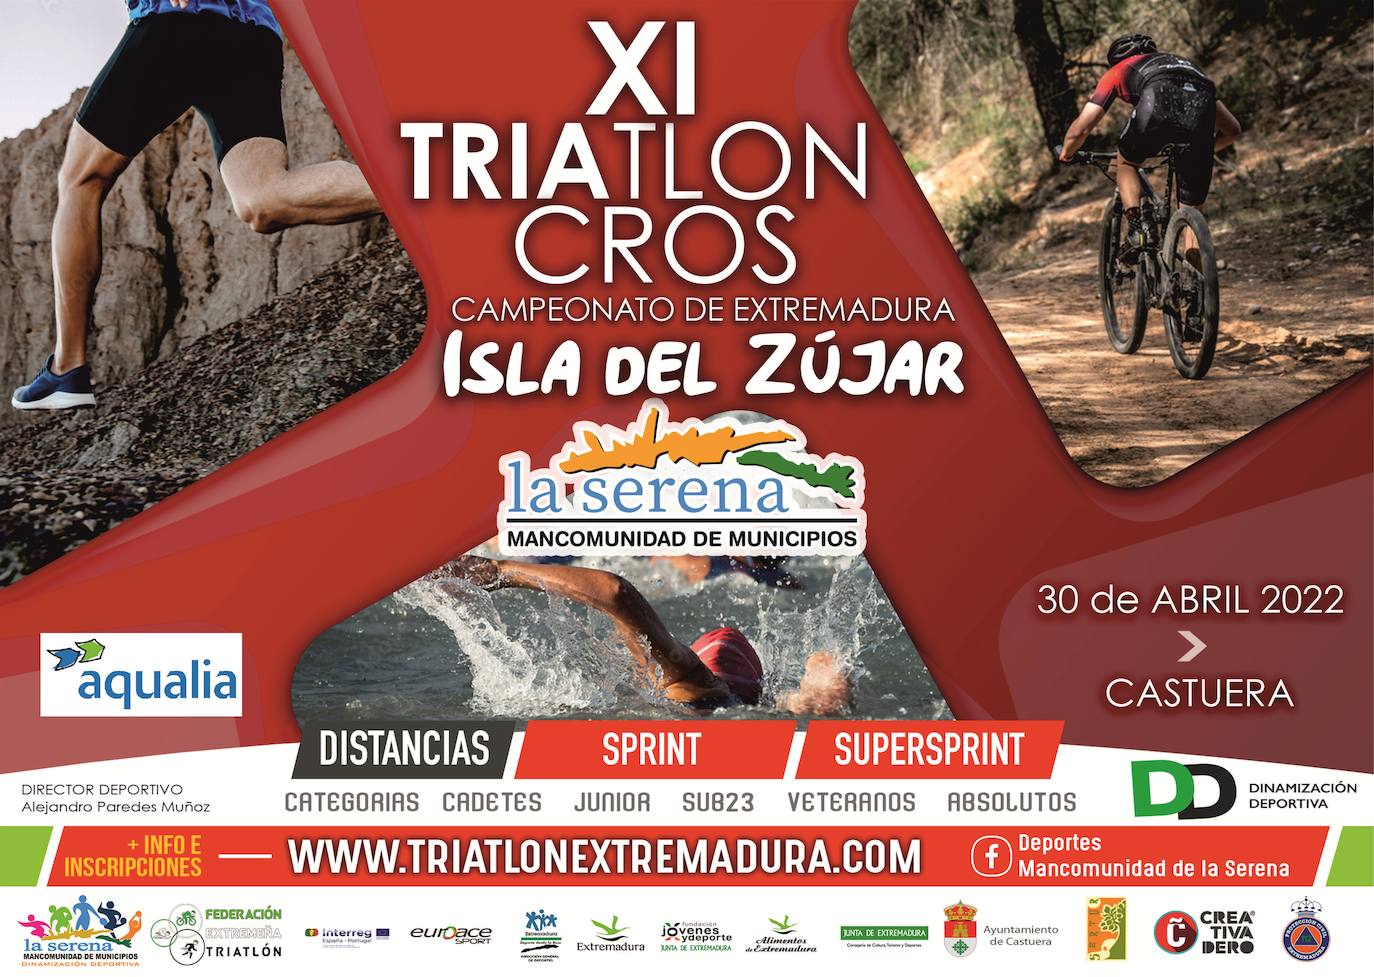 El 'XI Triatlón Cross en la Isla del Zújar. Campeonato de Extremadura' se celebrará este sábado